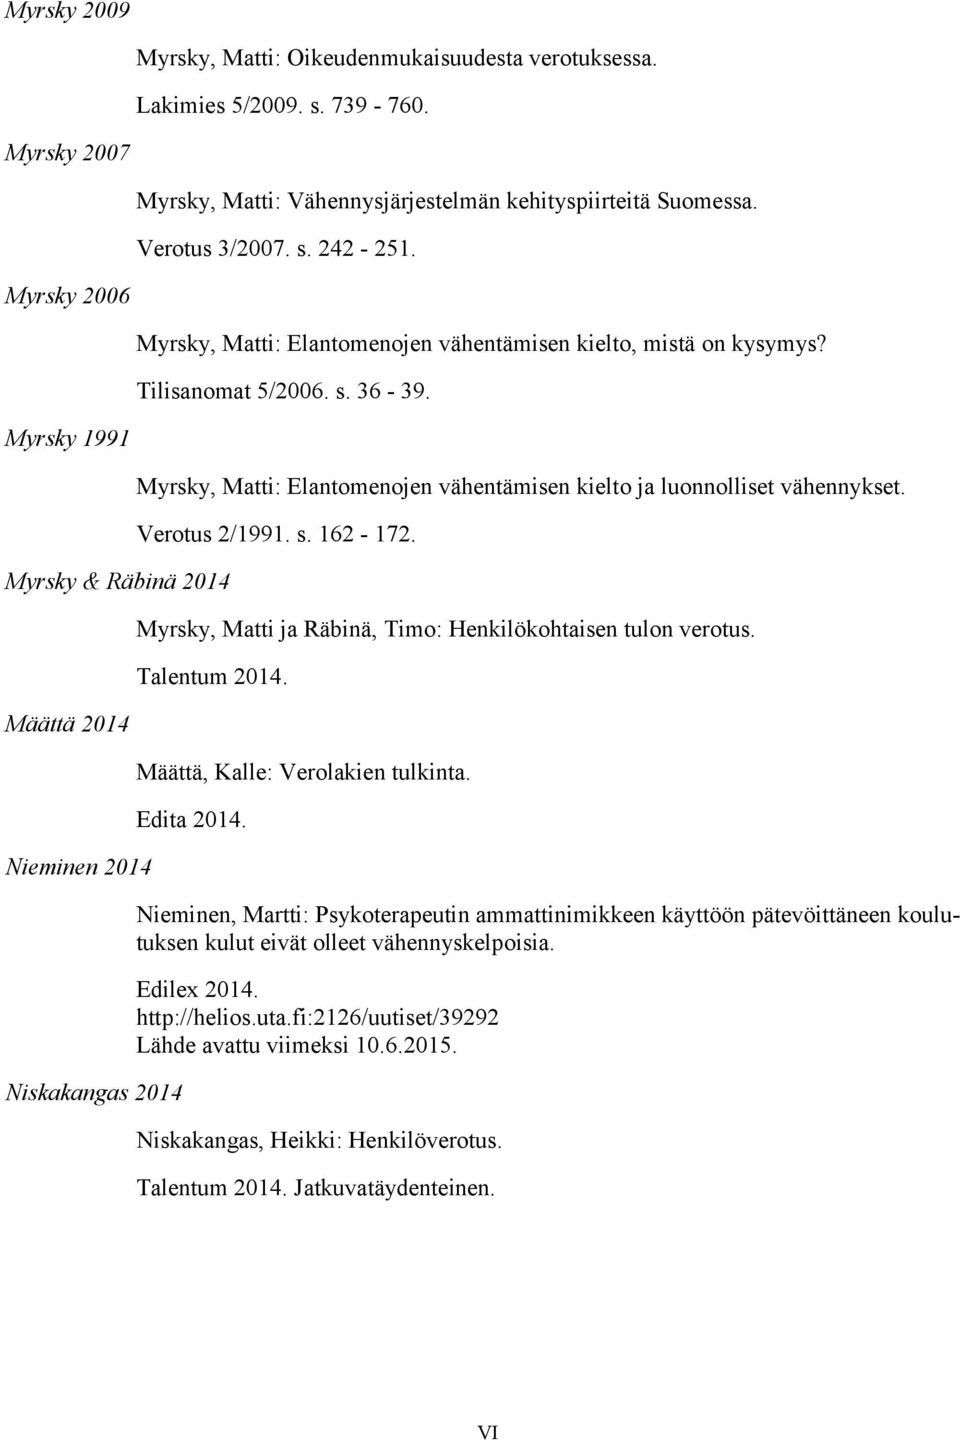 Myrsky 1991 Myrsky & Räbinä 2014 Määttä 2014 Nieminen 2014 Niskakangas 2014 Myrsky, Matti: Elantomenojen vähentämisen kielto ja luonnolliset vähennykset. Verotus 2/1991. s. 162-172.